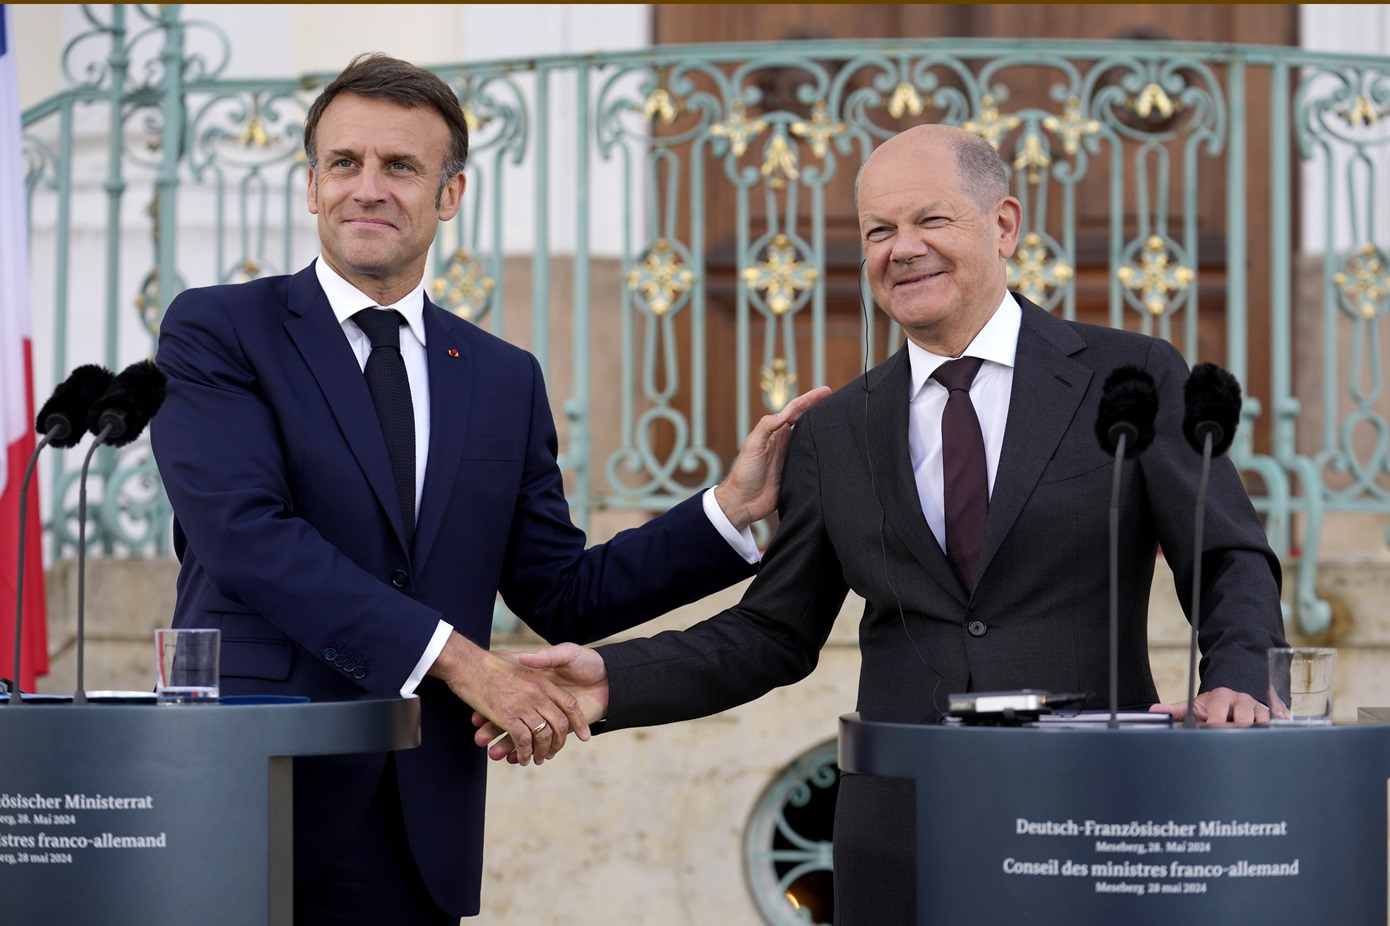 Συνεργασία μεταξύ Γαλλίας και Γερμανίας διαβεβαίωσαν Σολτς και Μακρόν – «Θα συμφωνούμε πάντα»